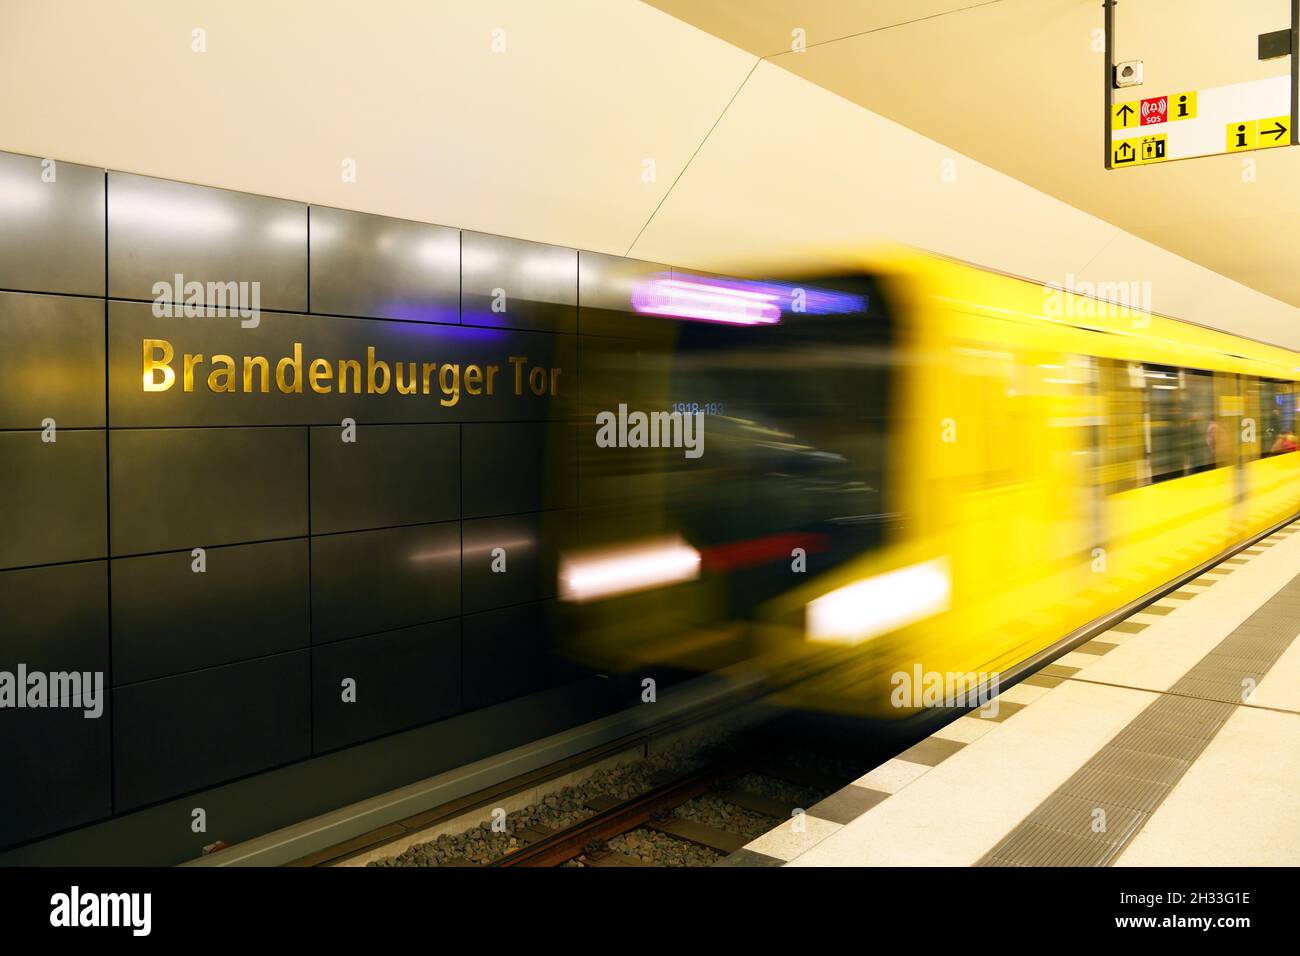 Einfahrender Zug in den neuen Bahnhof 'Bandenburger Tor' der U Bahn Linie U5, Berlin, Deutschland Foto Stock